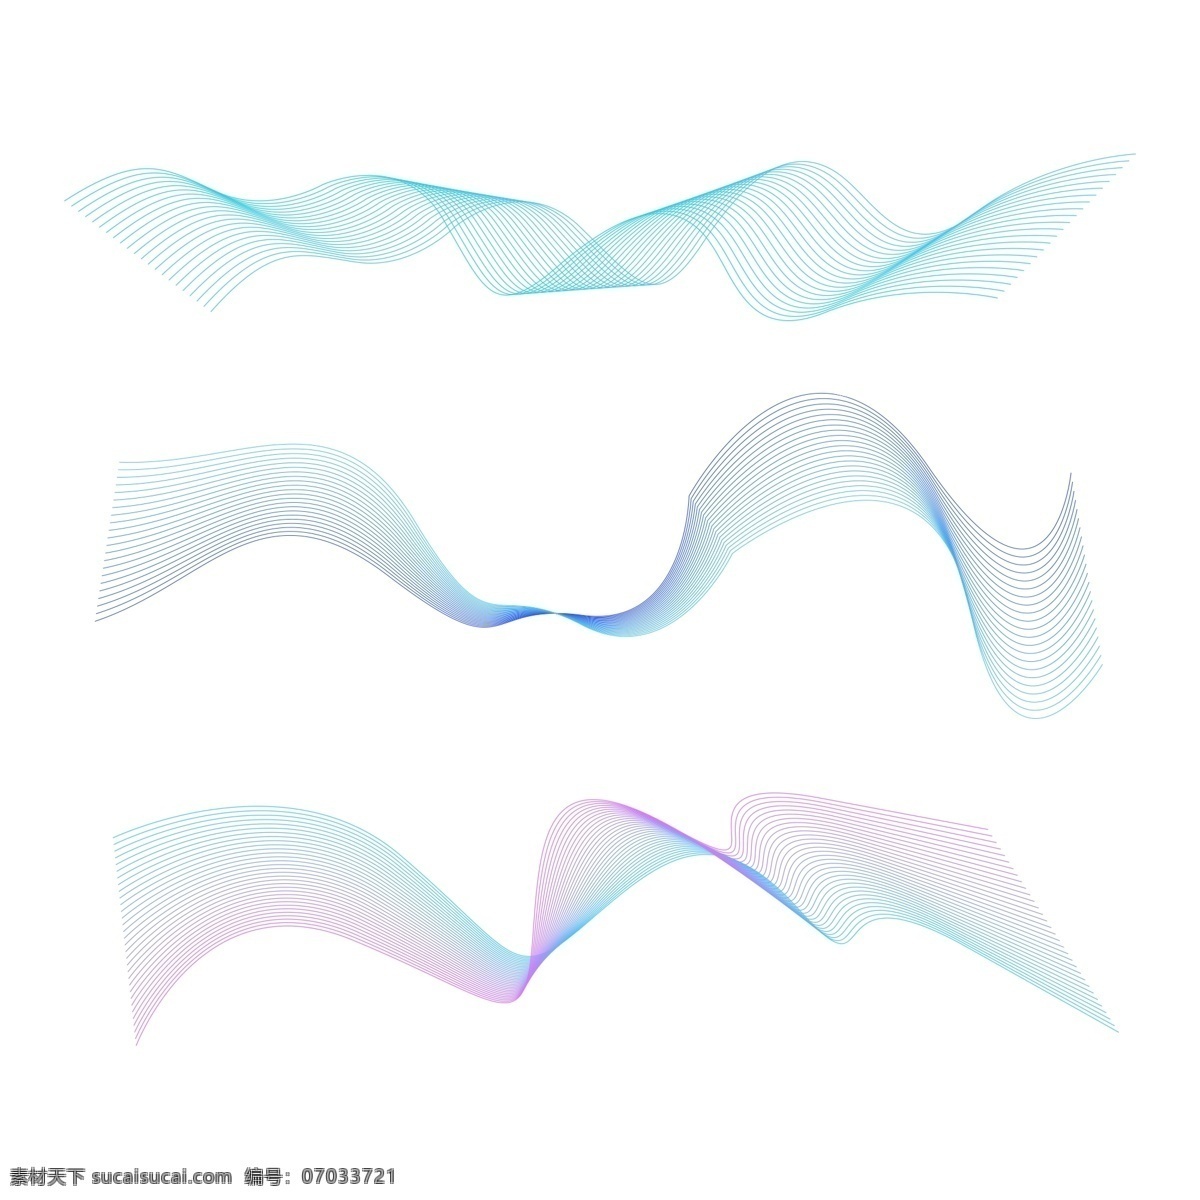 科技 线条 蓝色 紫色 科技线条 抽象 抽象线条 动感线条 科技线 幻想线条 波浪线条